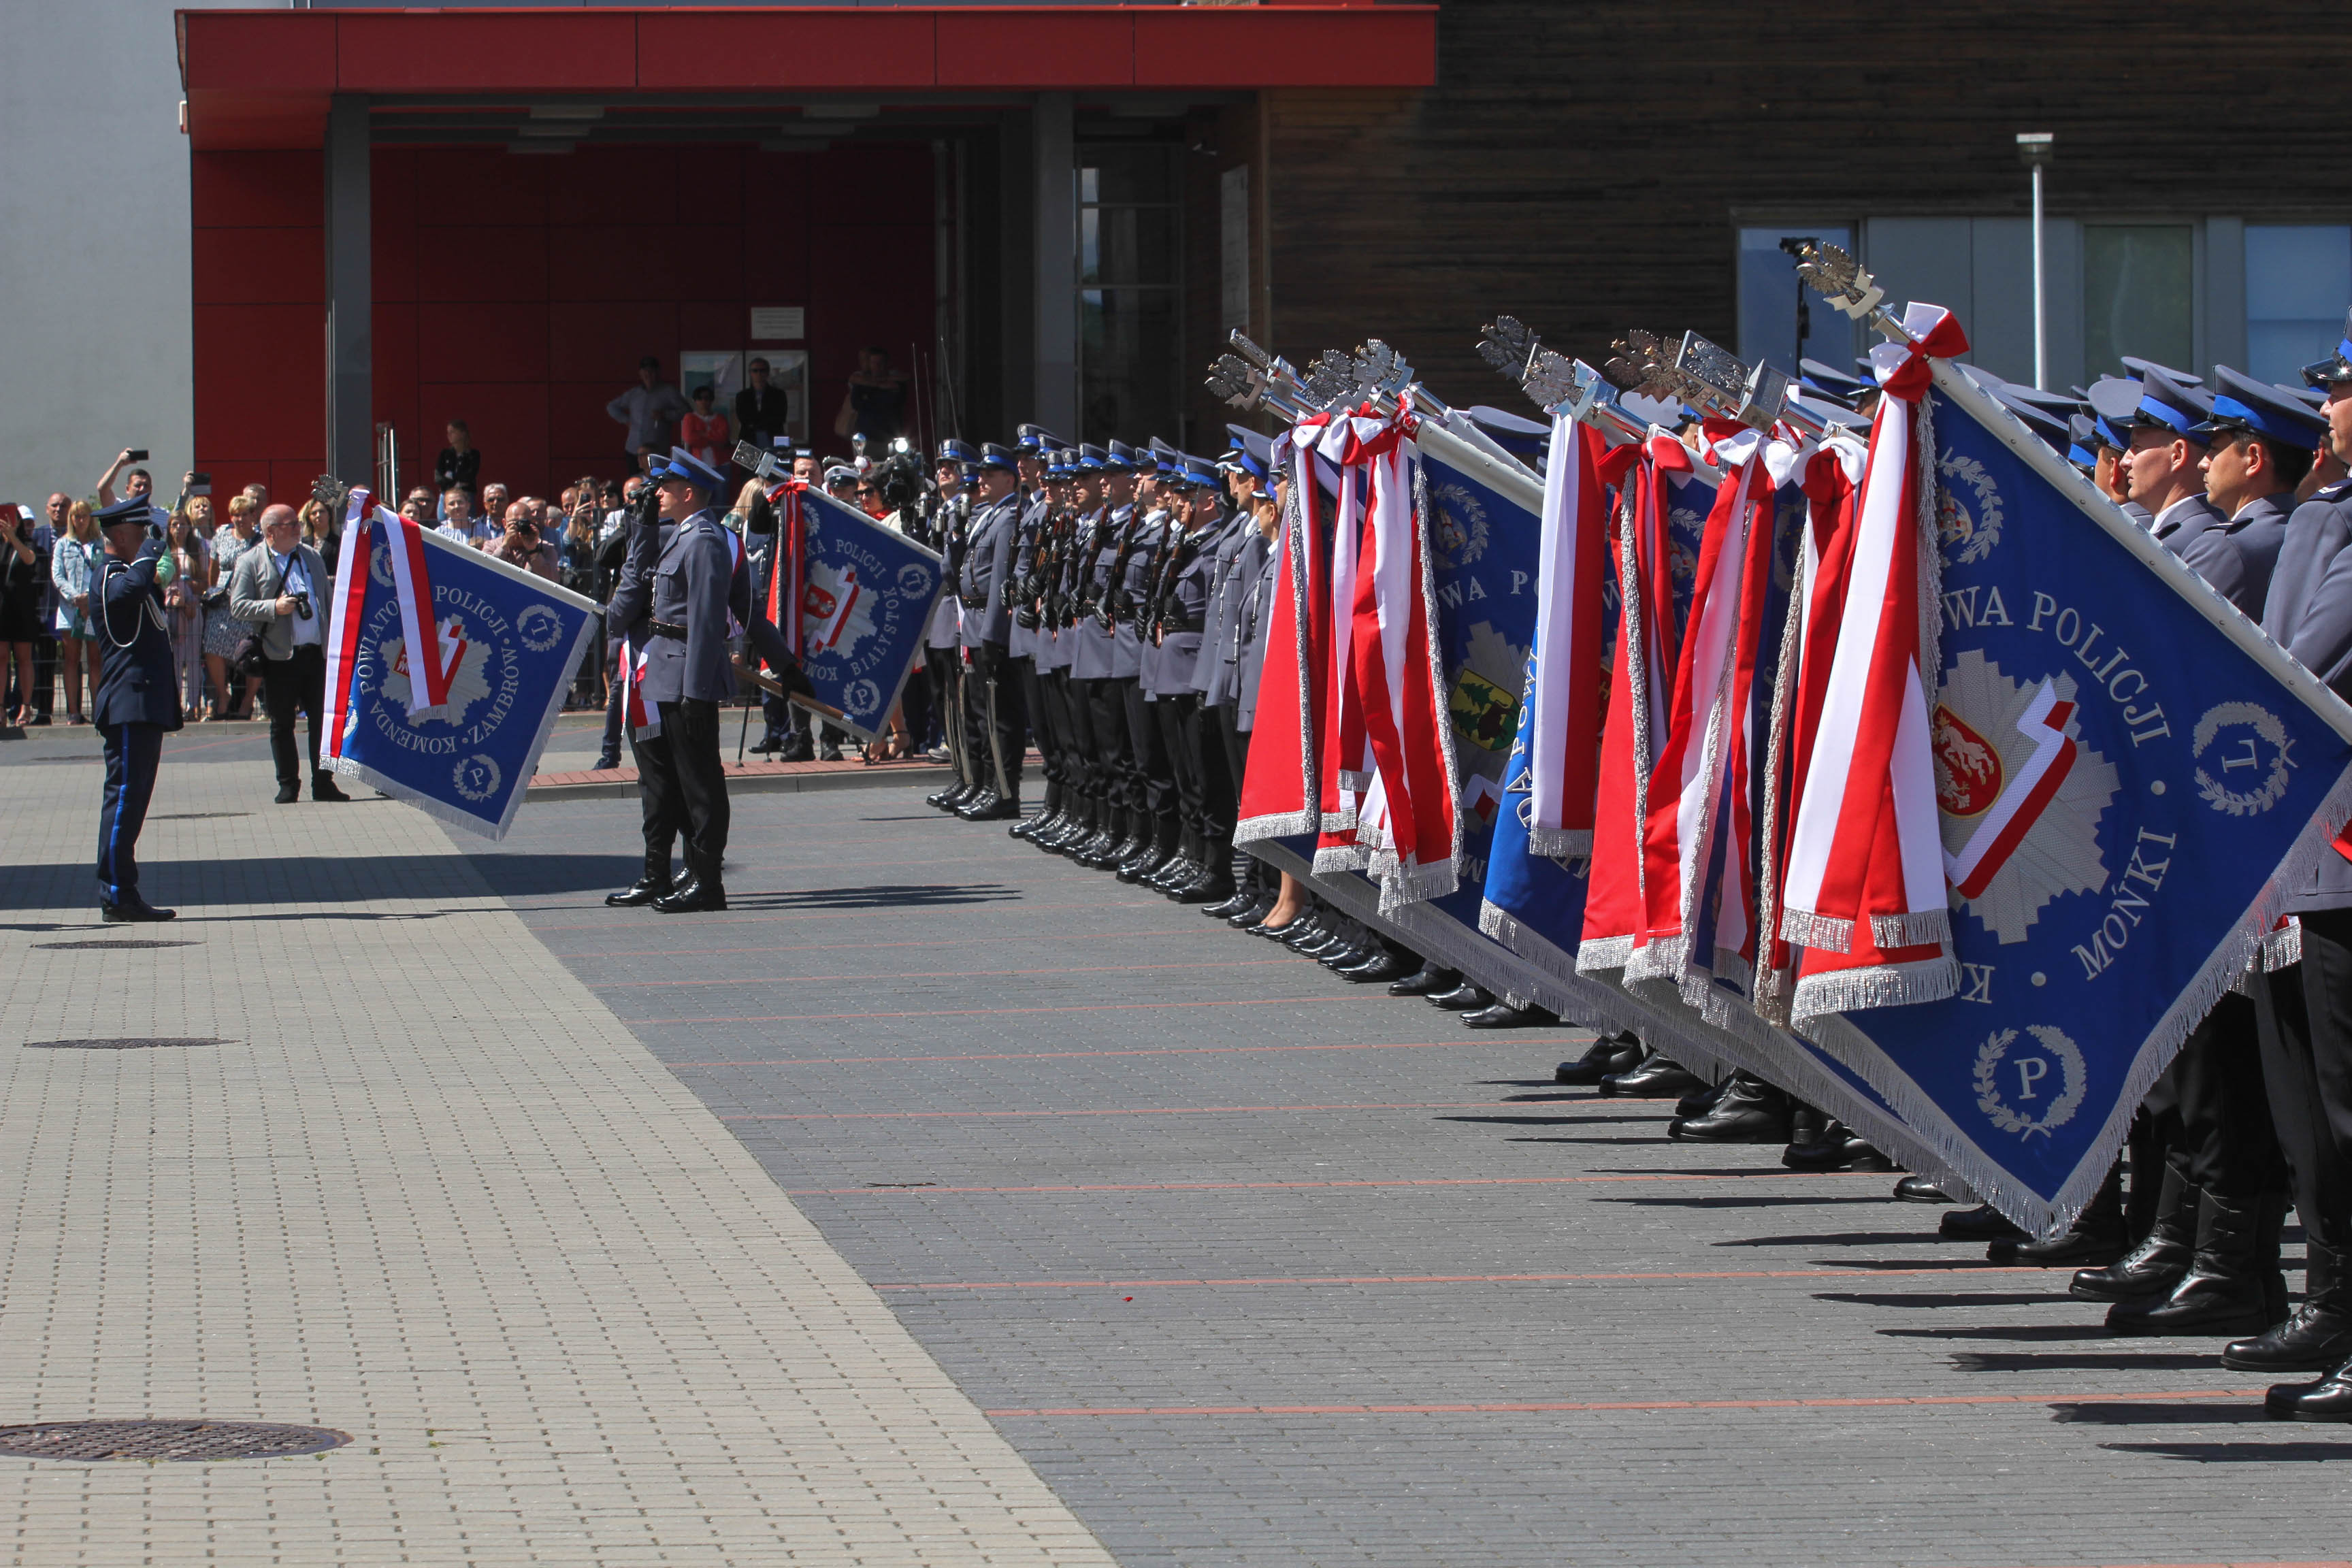 Wojewódzkie Obchody Święta Policji oraz wręczenie sztandaru zambrowskiej jednostce Policji